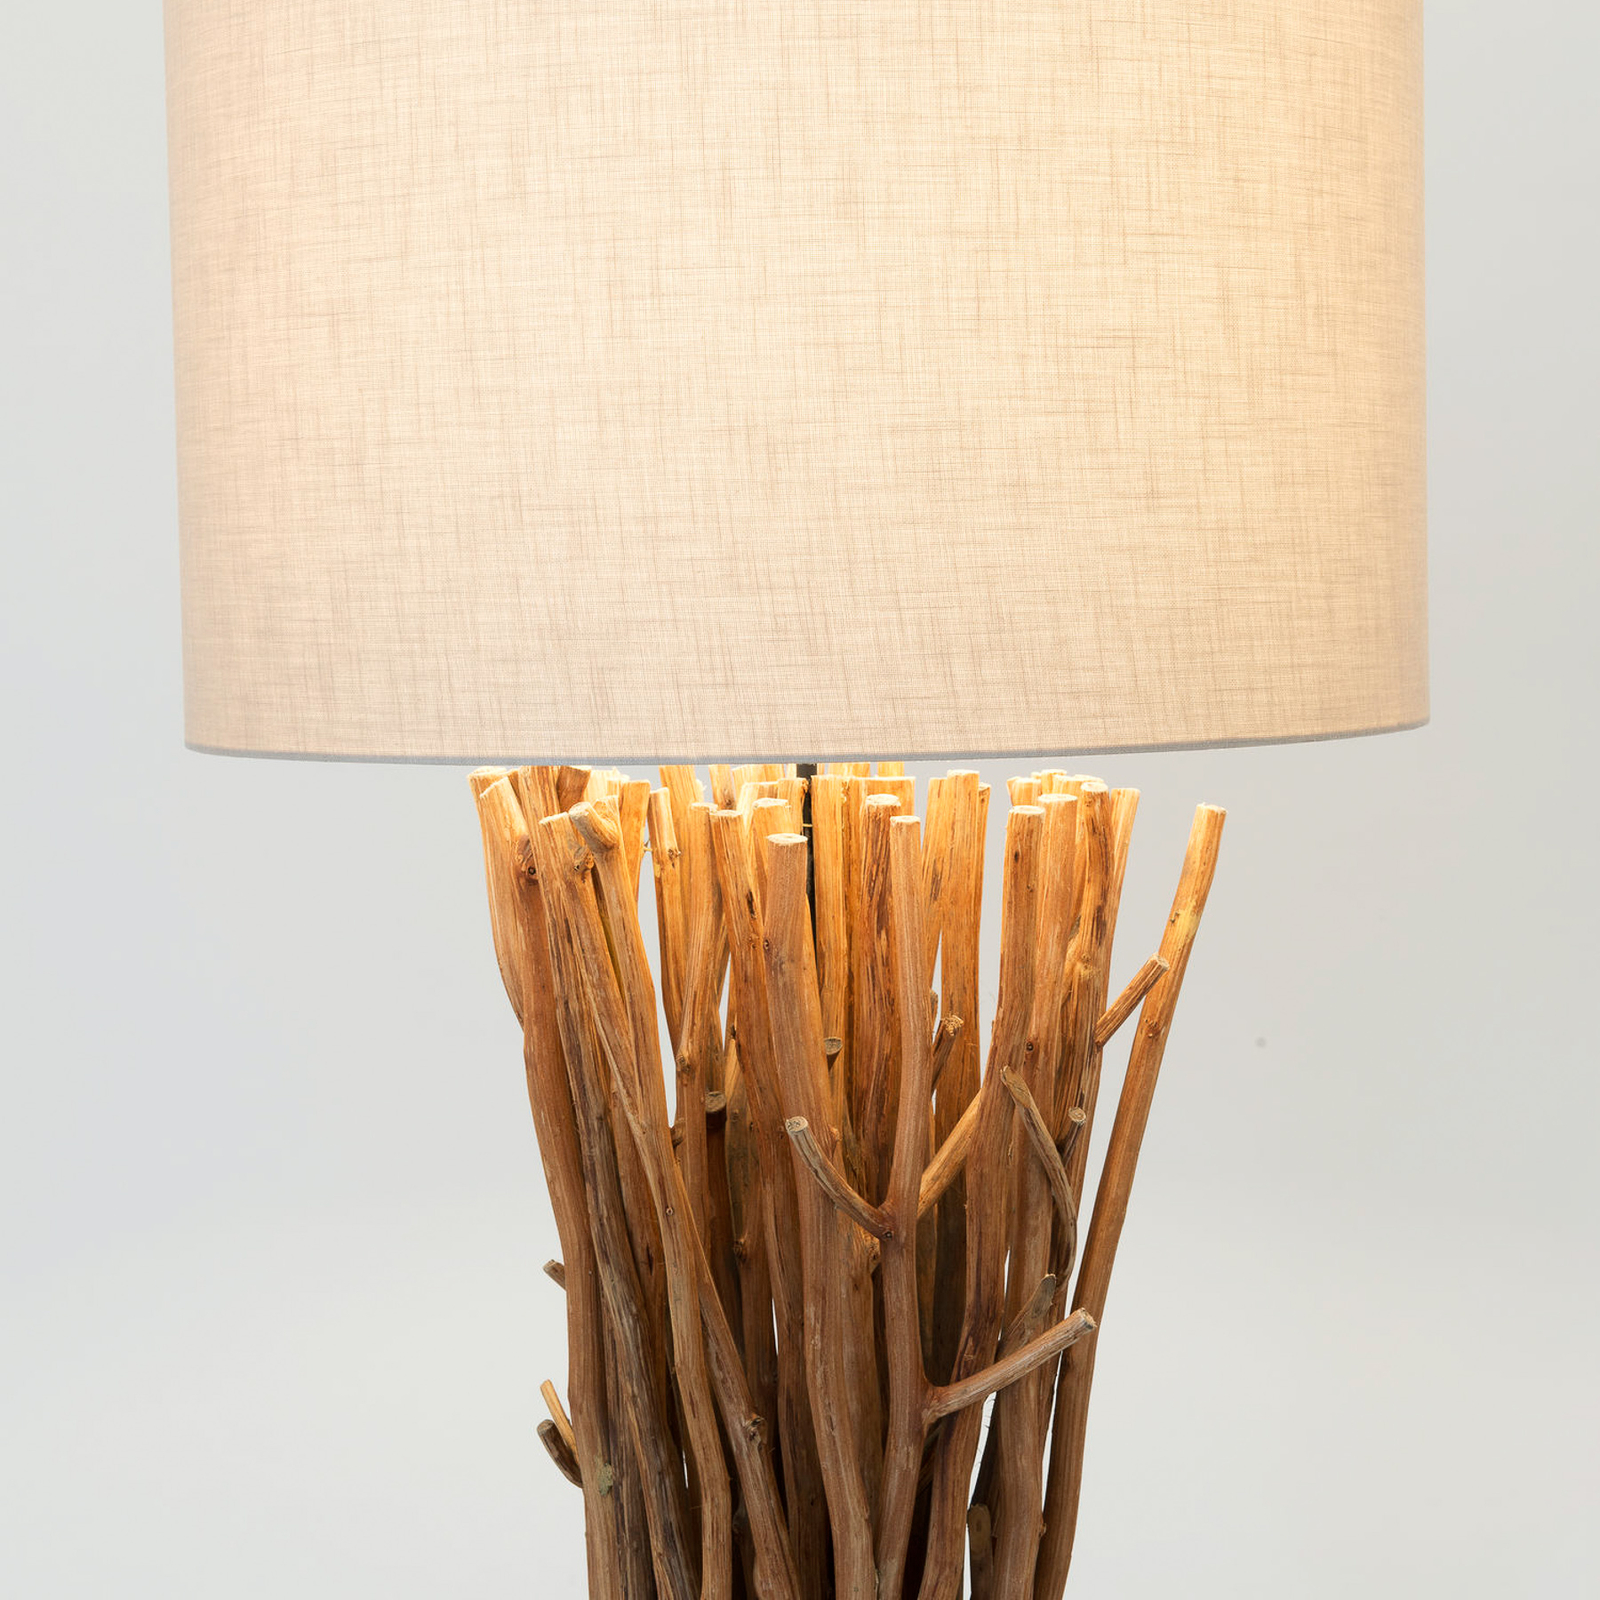 Stojacia lampa Palmaria, farba dreva/béžová, výška 177 cm, drevo